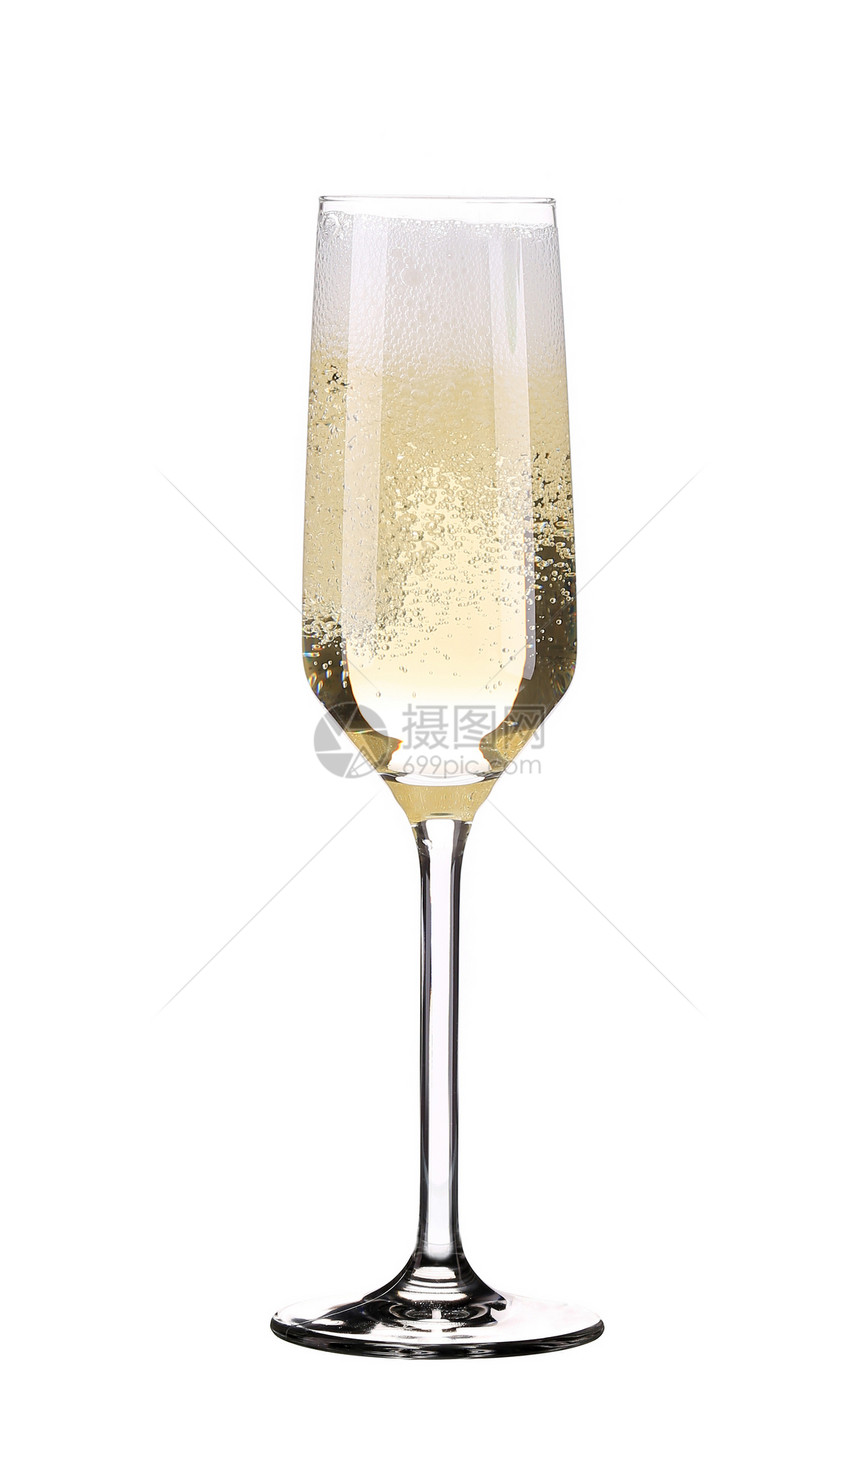 一杯新鲜的香槟生活泡沫飞溅高脚杯庆典水晶行动玻璃瓶子喷出图片